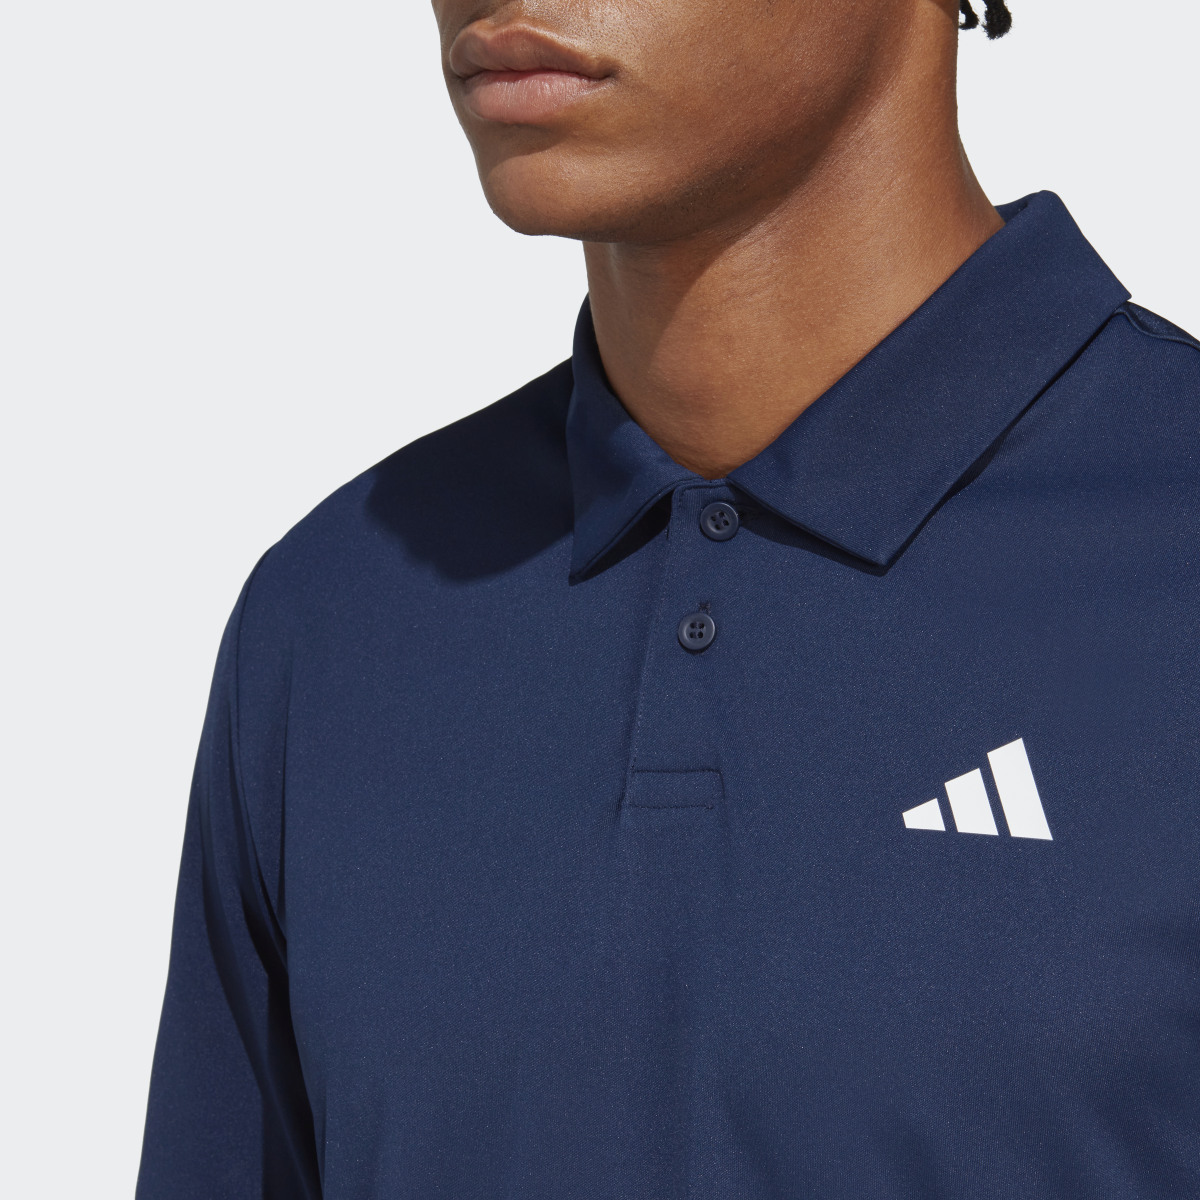 Adidas Club Tennis Poloshirt. 6